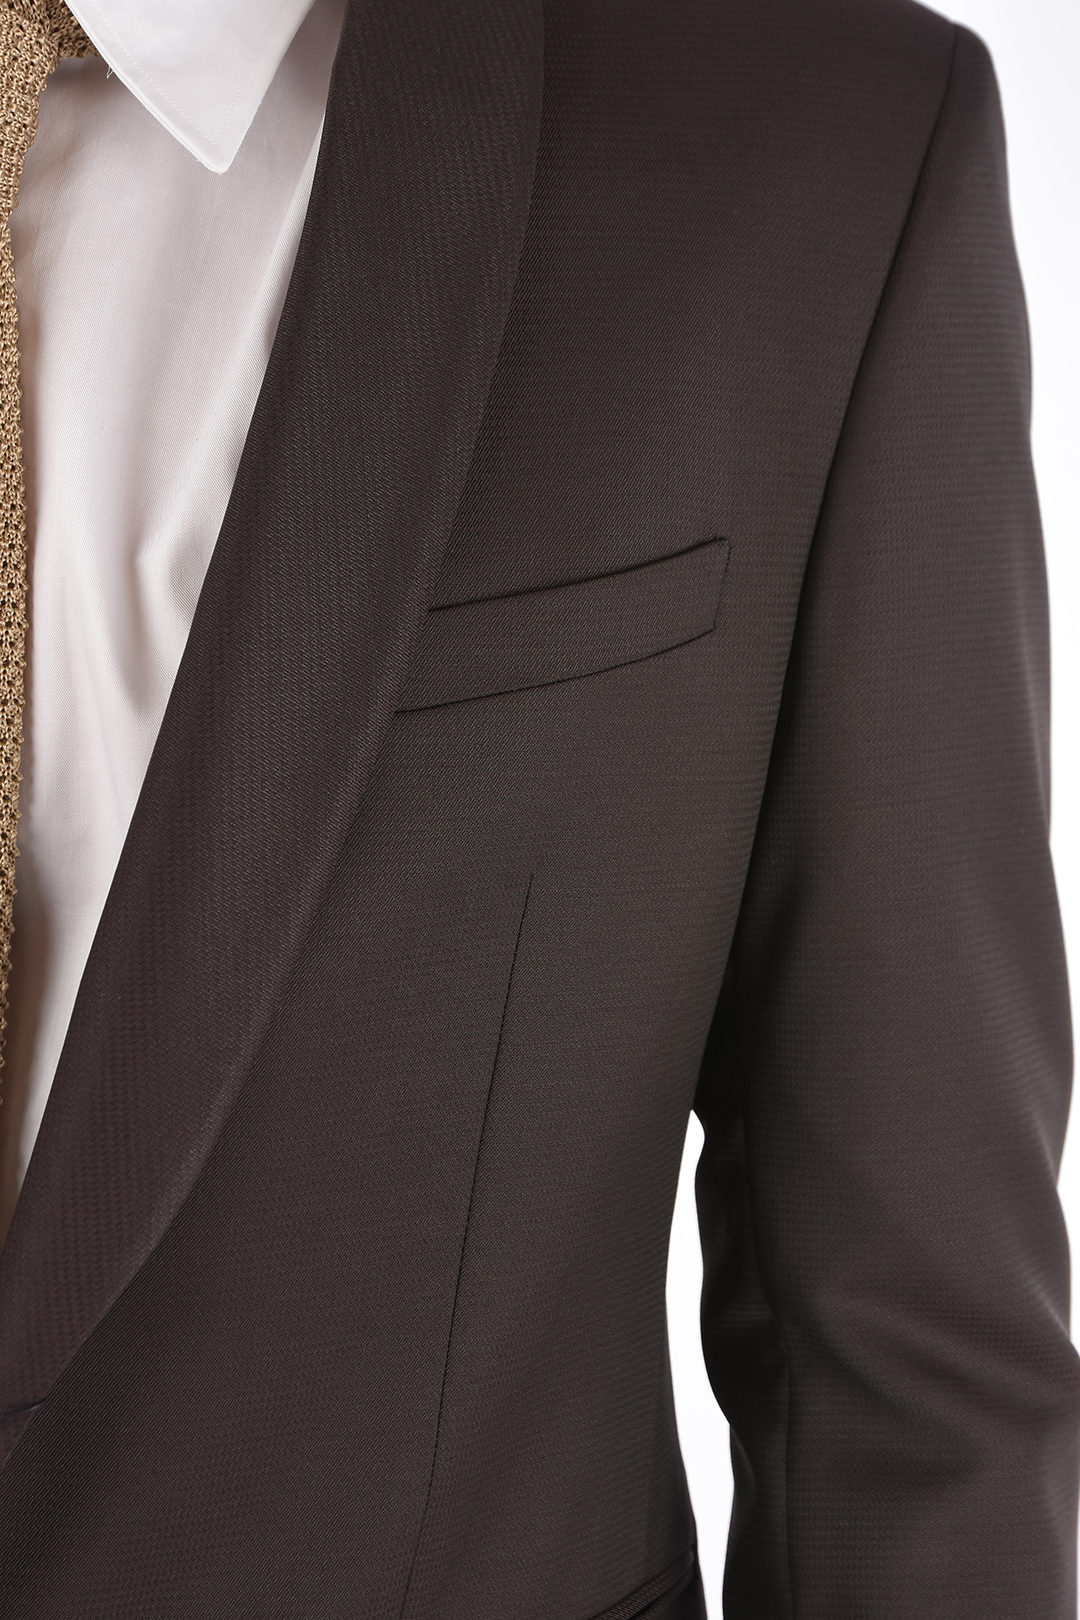 Corneliani CC COLLECTION side vents shawl lapel 2-button CERIM.RESET suit drop 8R - Glamood Outlet